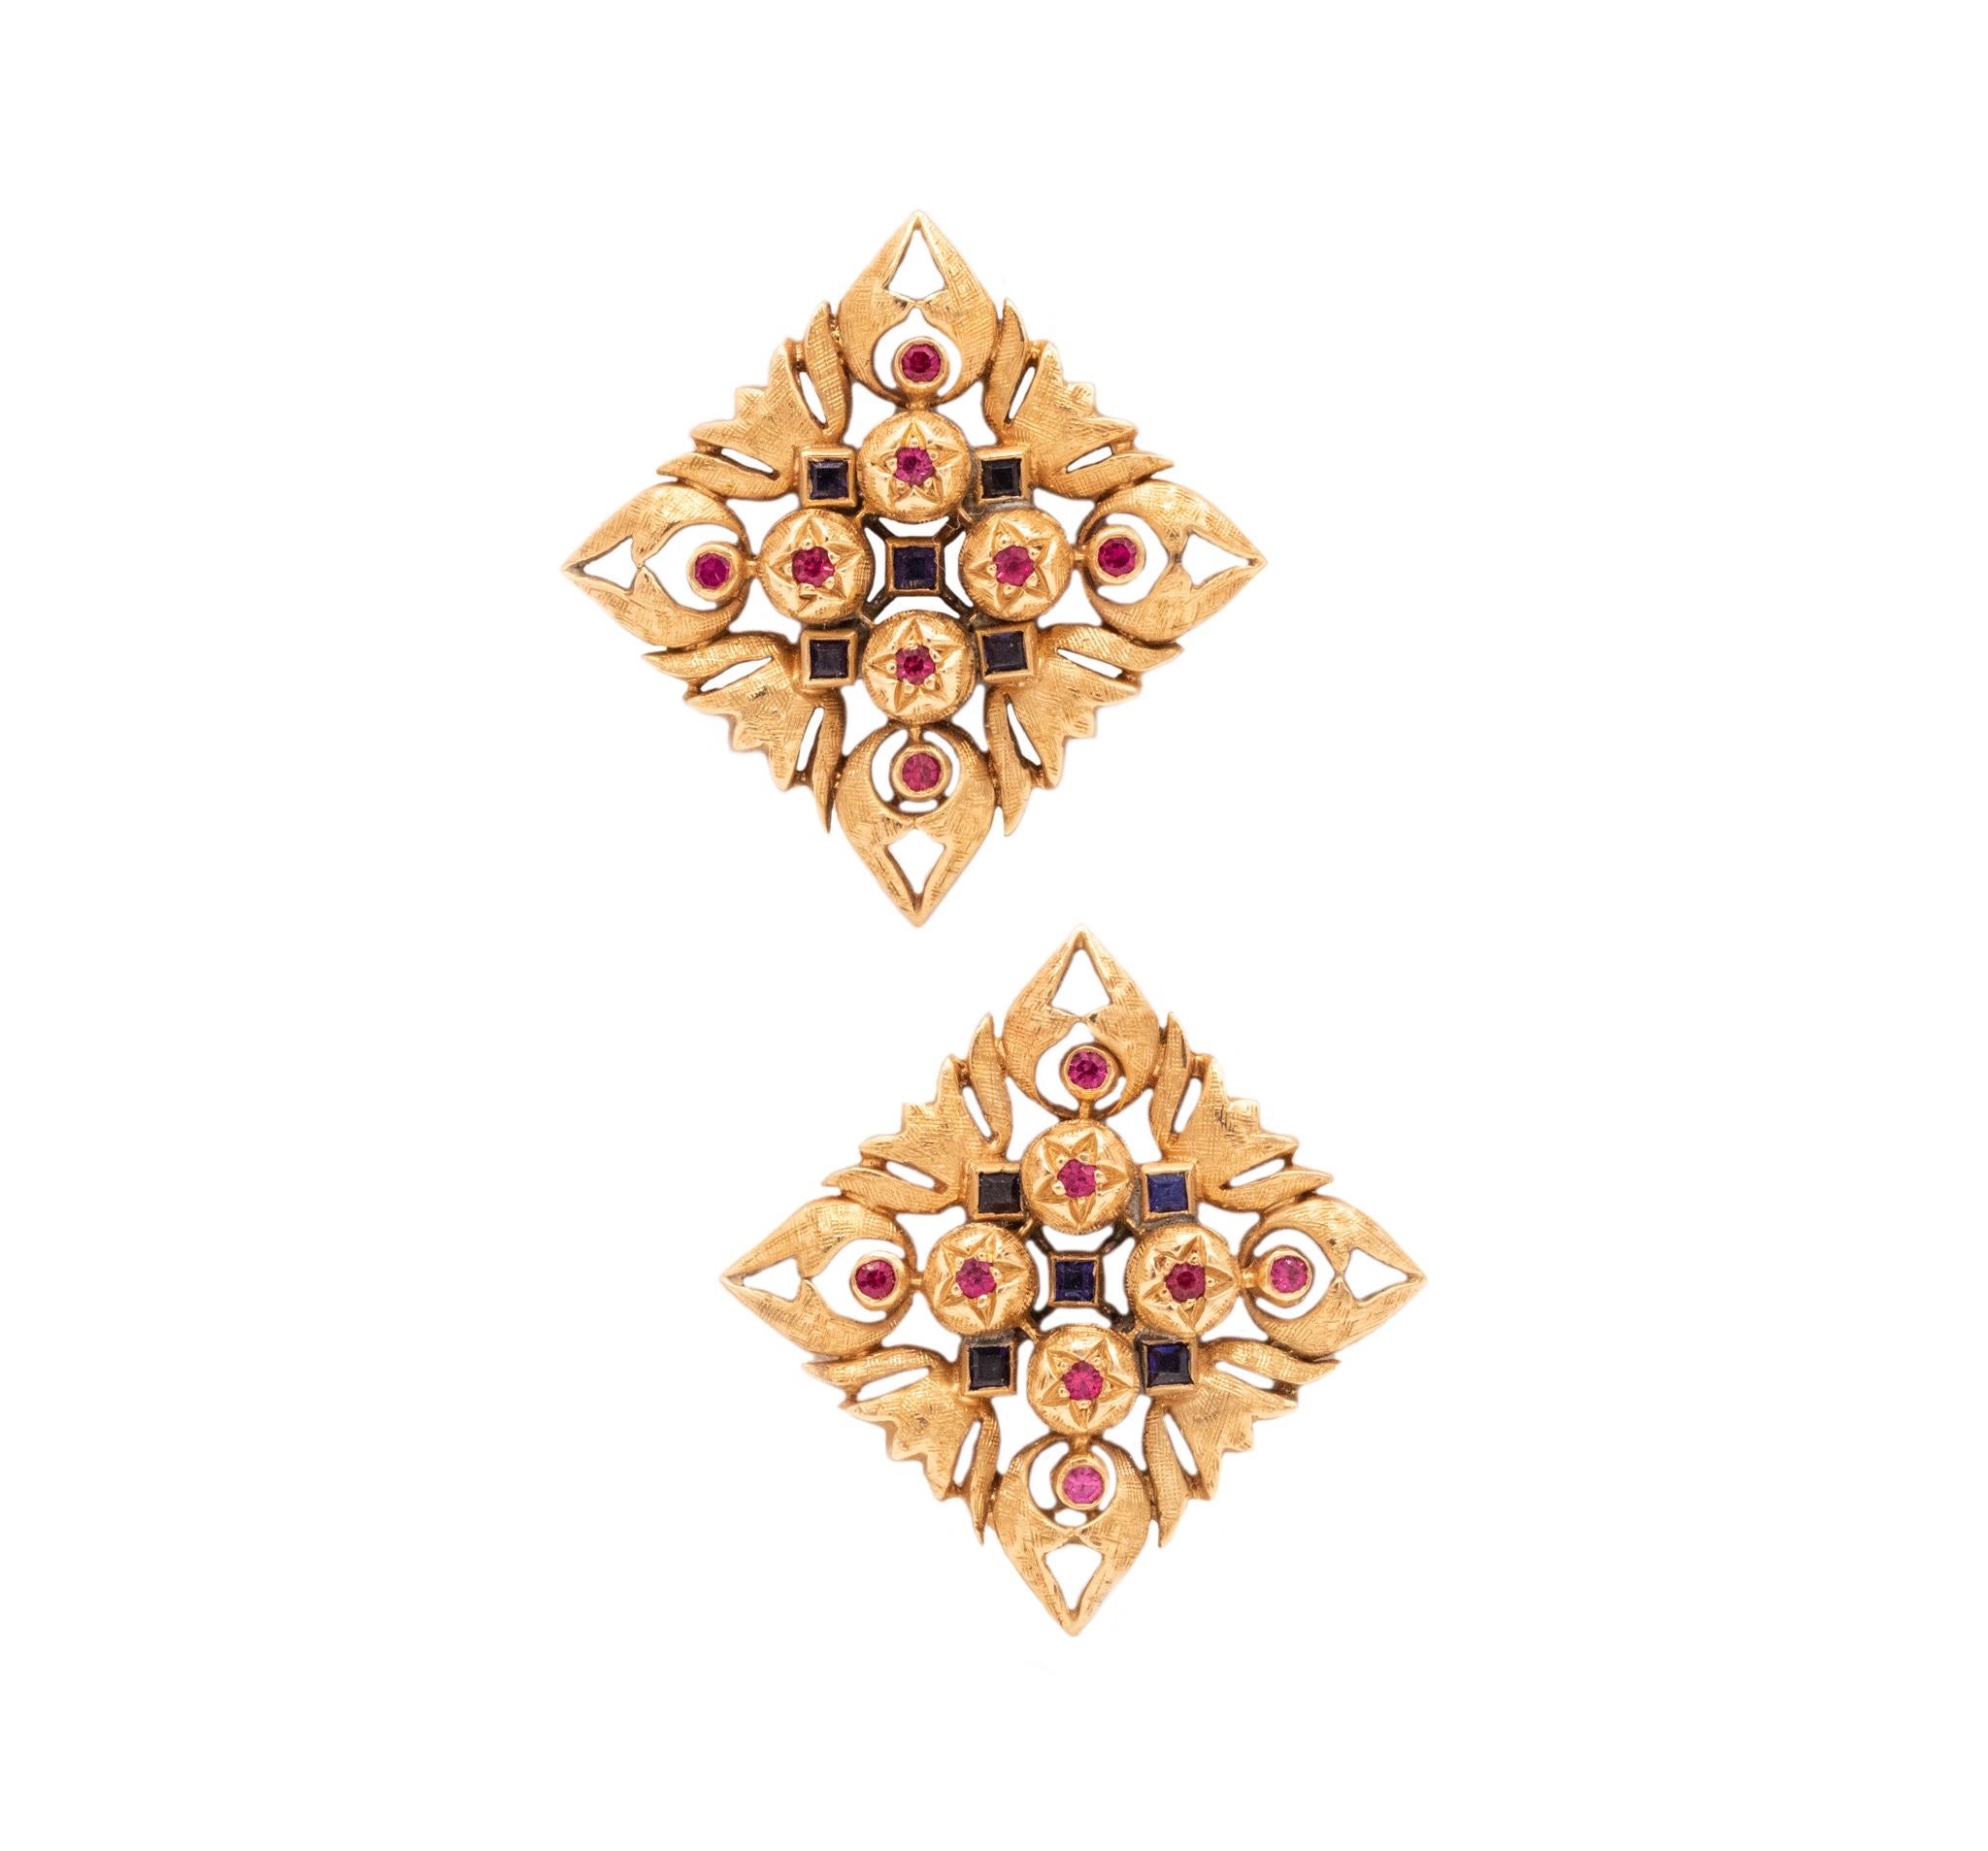 Paire d'agrafes ornées de bijoux de la Renaissance Florentine

Une pièce vintage de la Renaissance fabriquée à Florence, en Italie, dans les années 1930. Ce magnifique clip-earrings a été réalisé en or jaune massif de 18 carats avec une finition